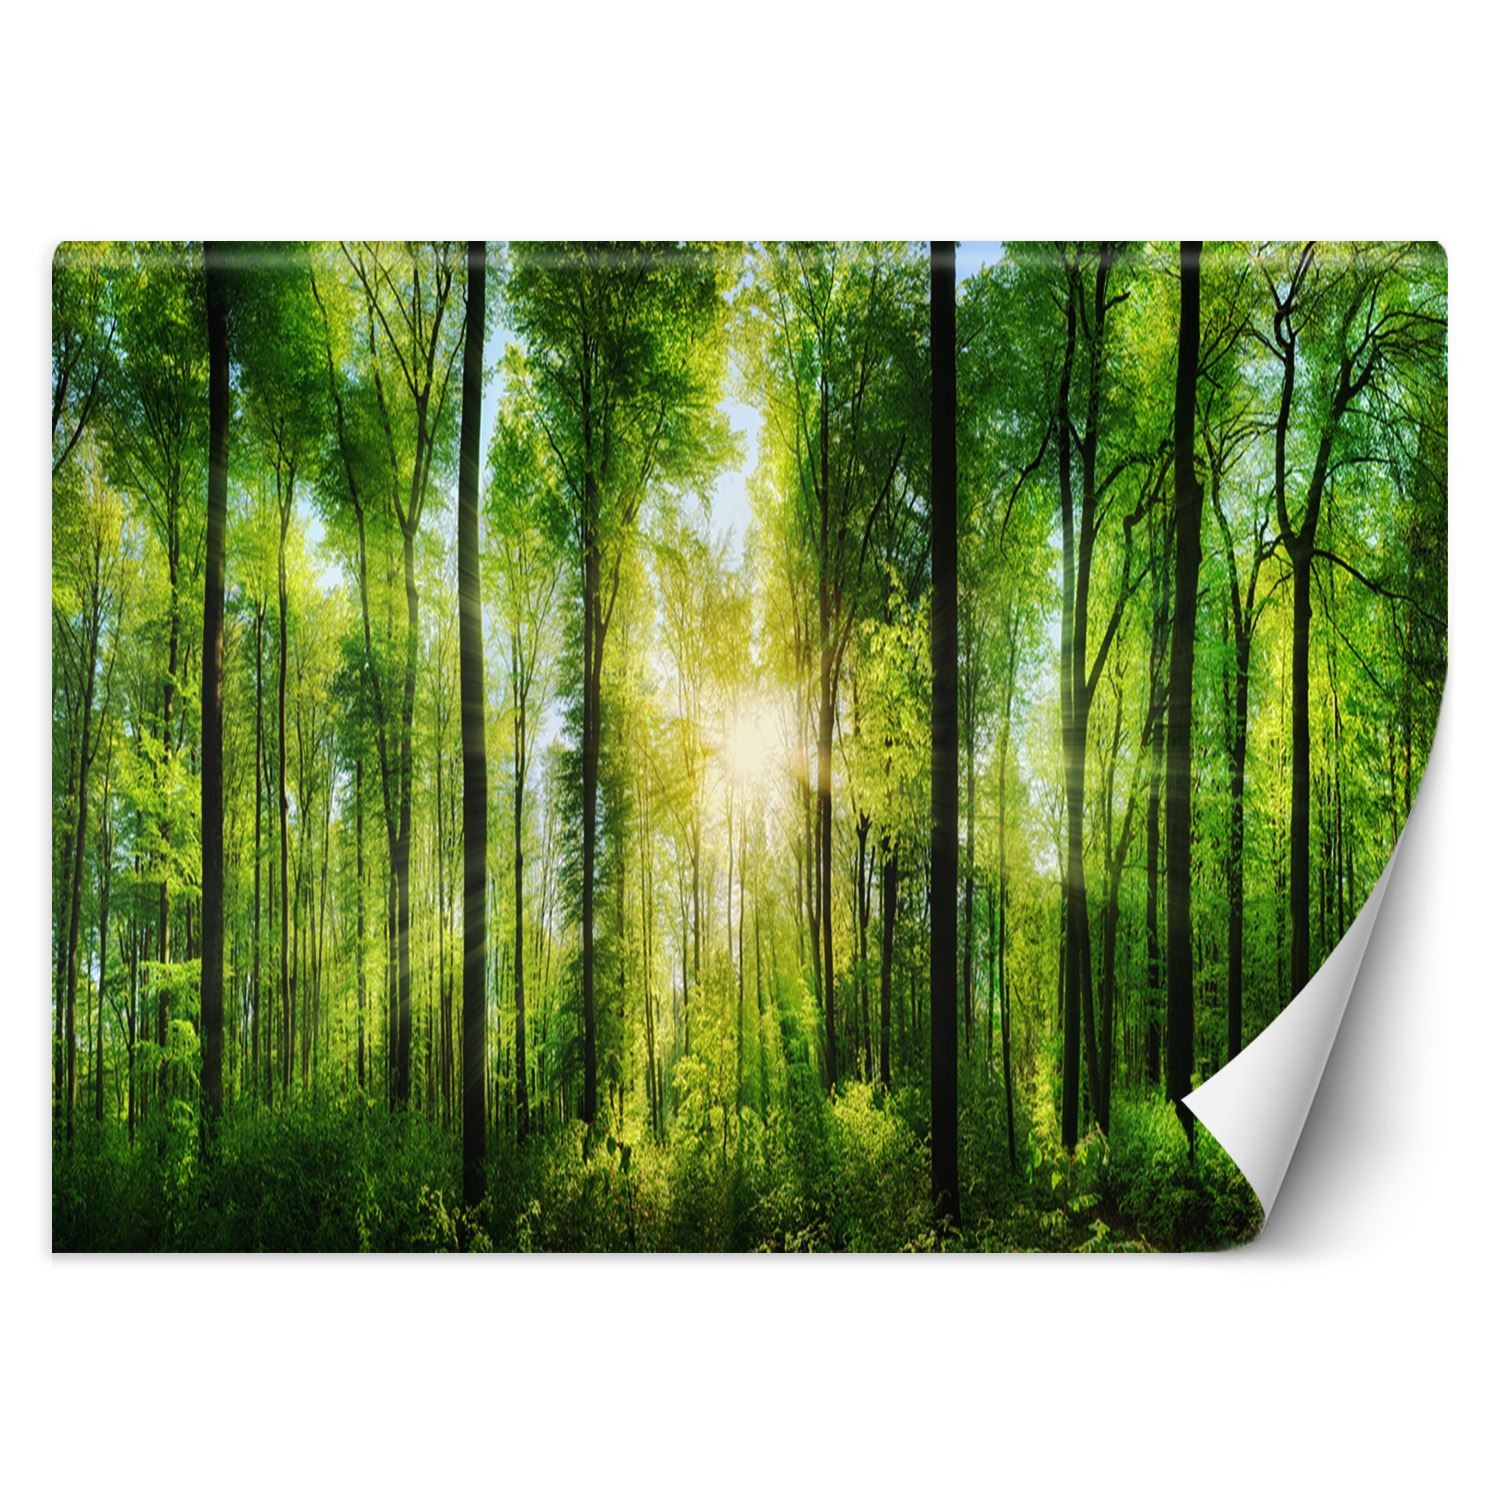 Trend24 – Behang – Zonnestralen In Een Groen Bos – Behangpapier – Fotobehang Natuur – Behang Woonkamer – 450x315x2 cm – Incl. behanglijm